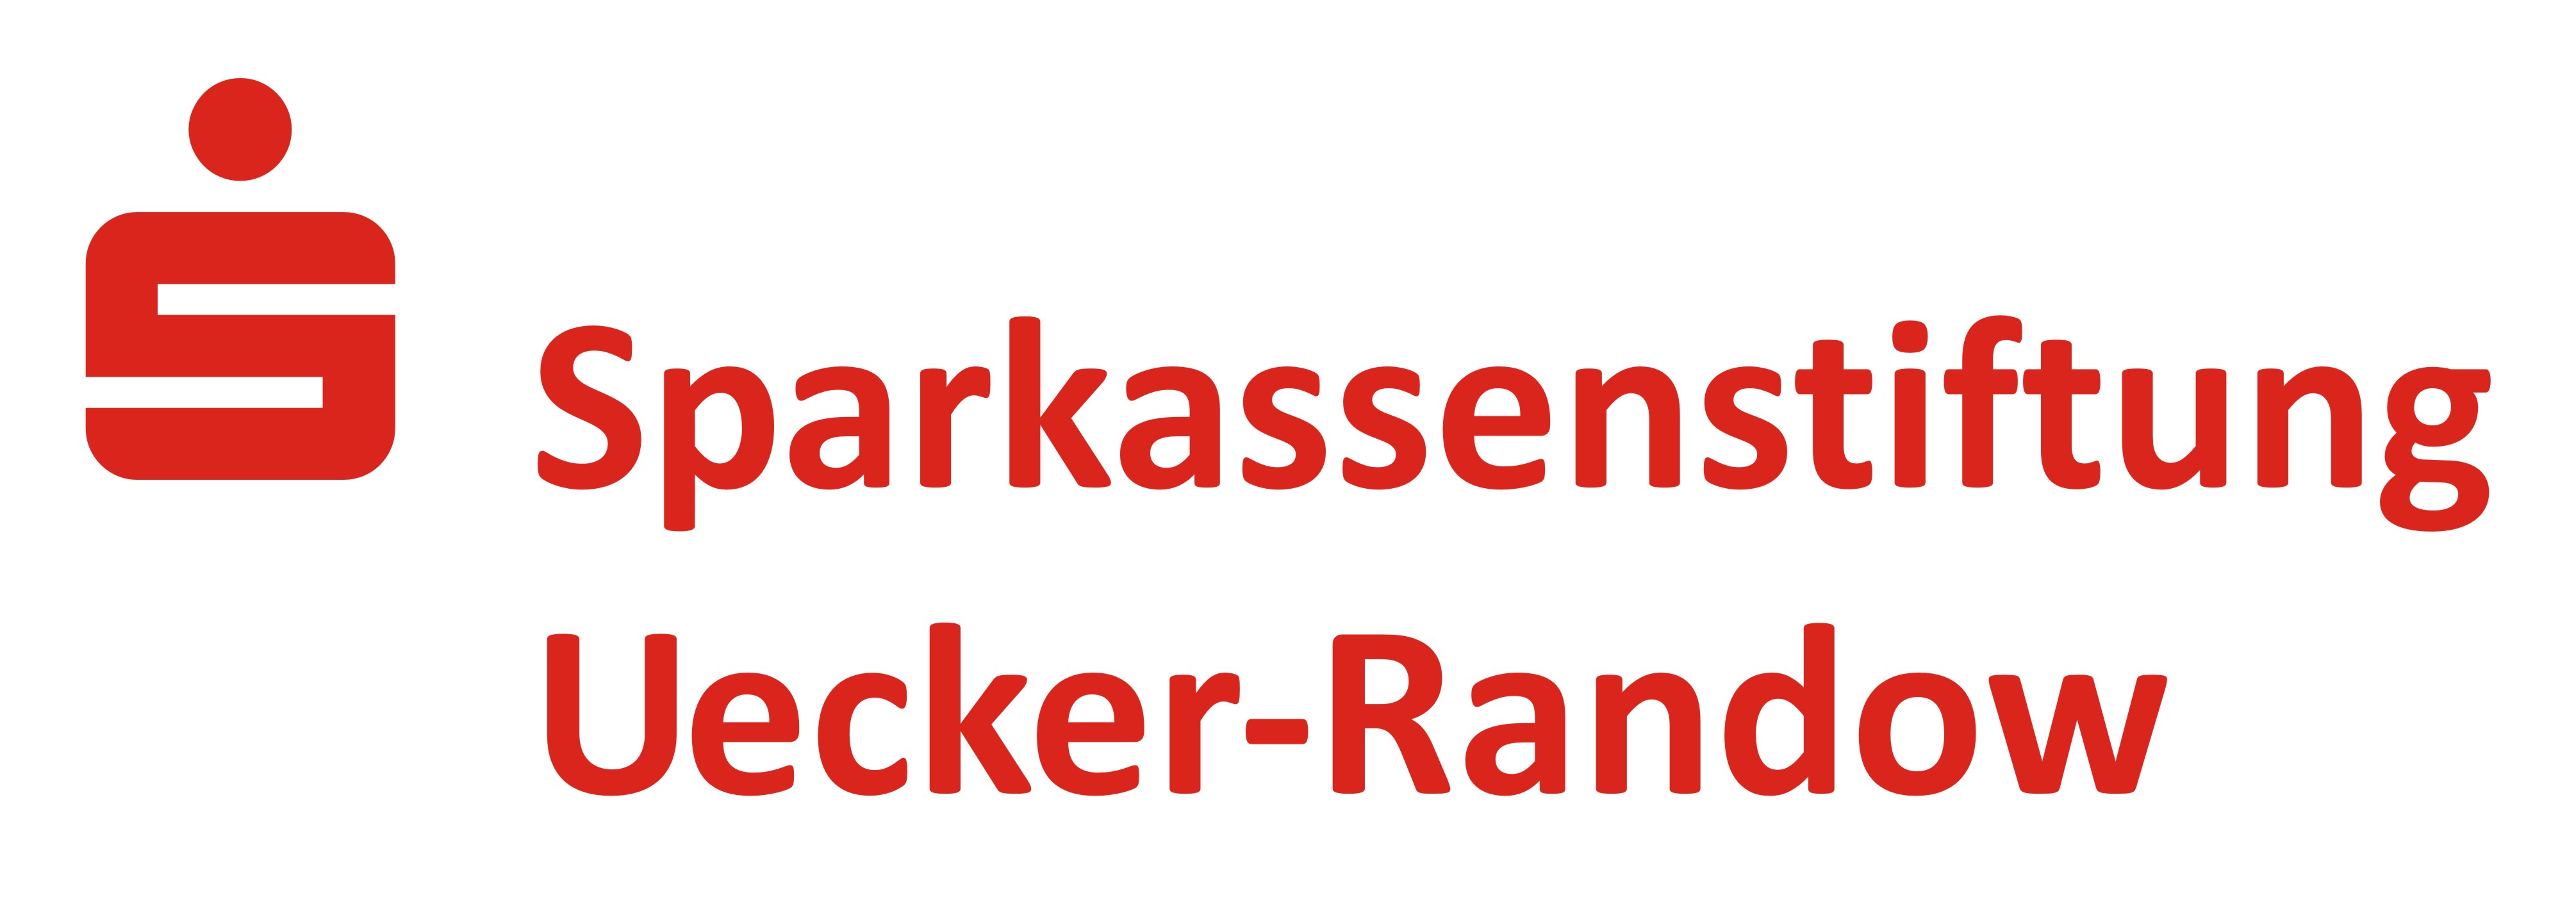 Sparkassenstiftung Uecker Randow Logo